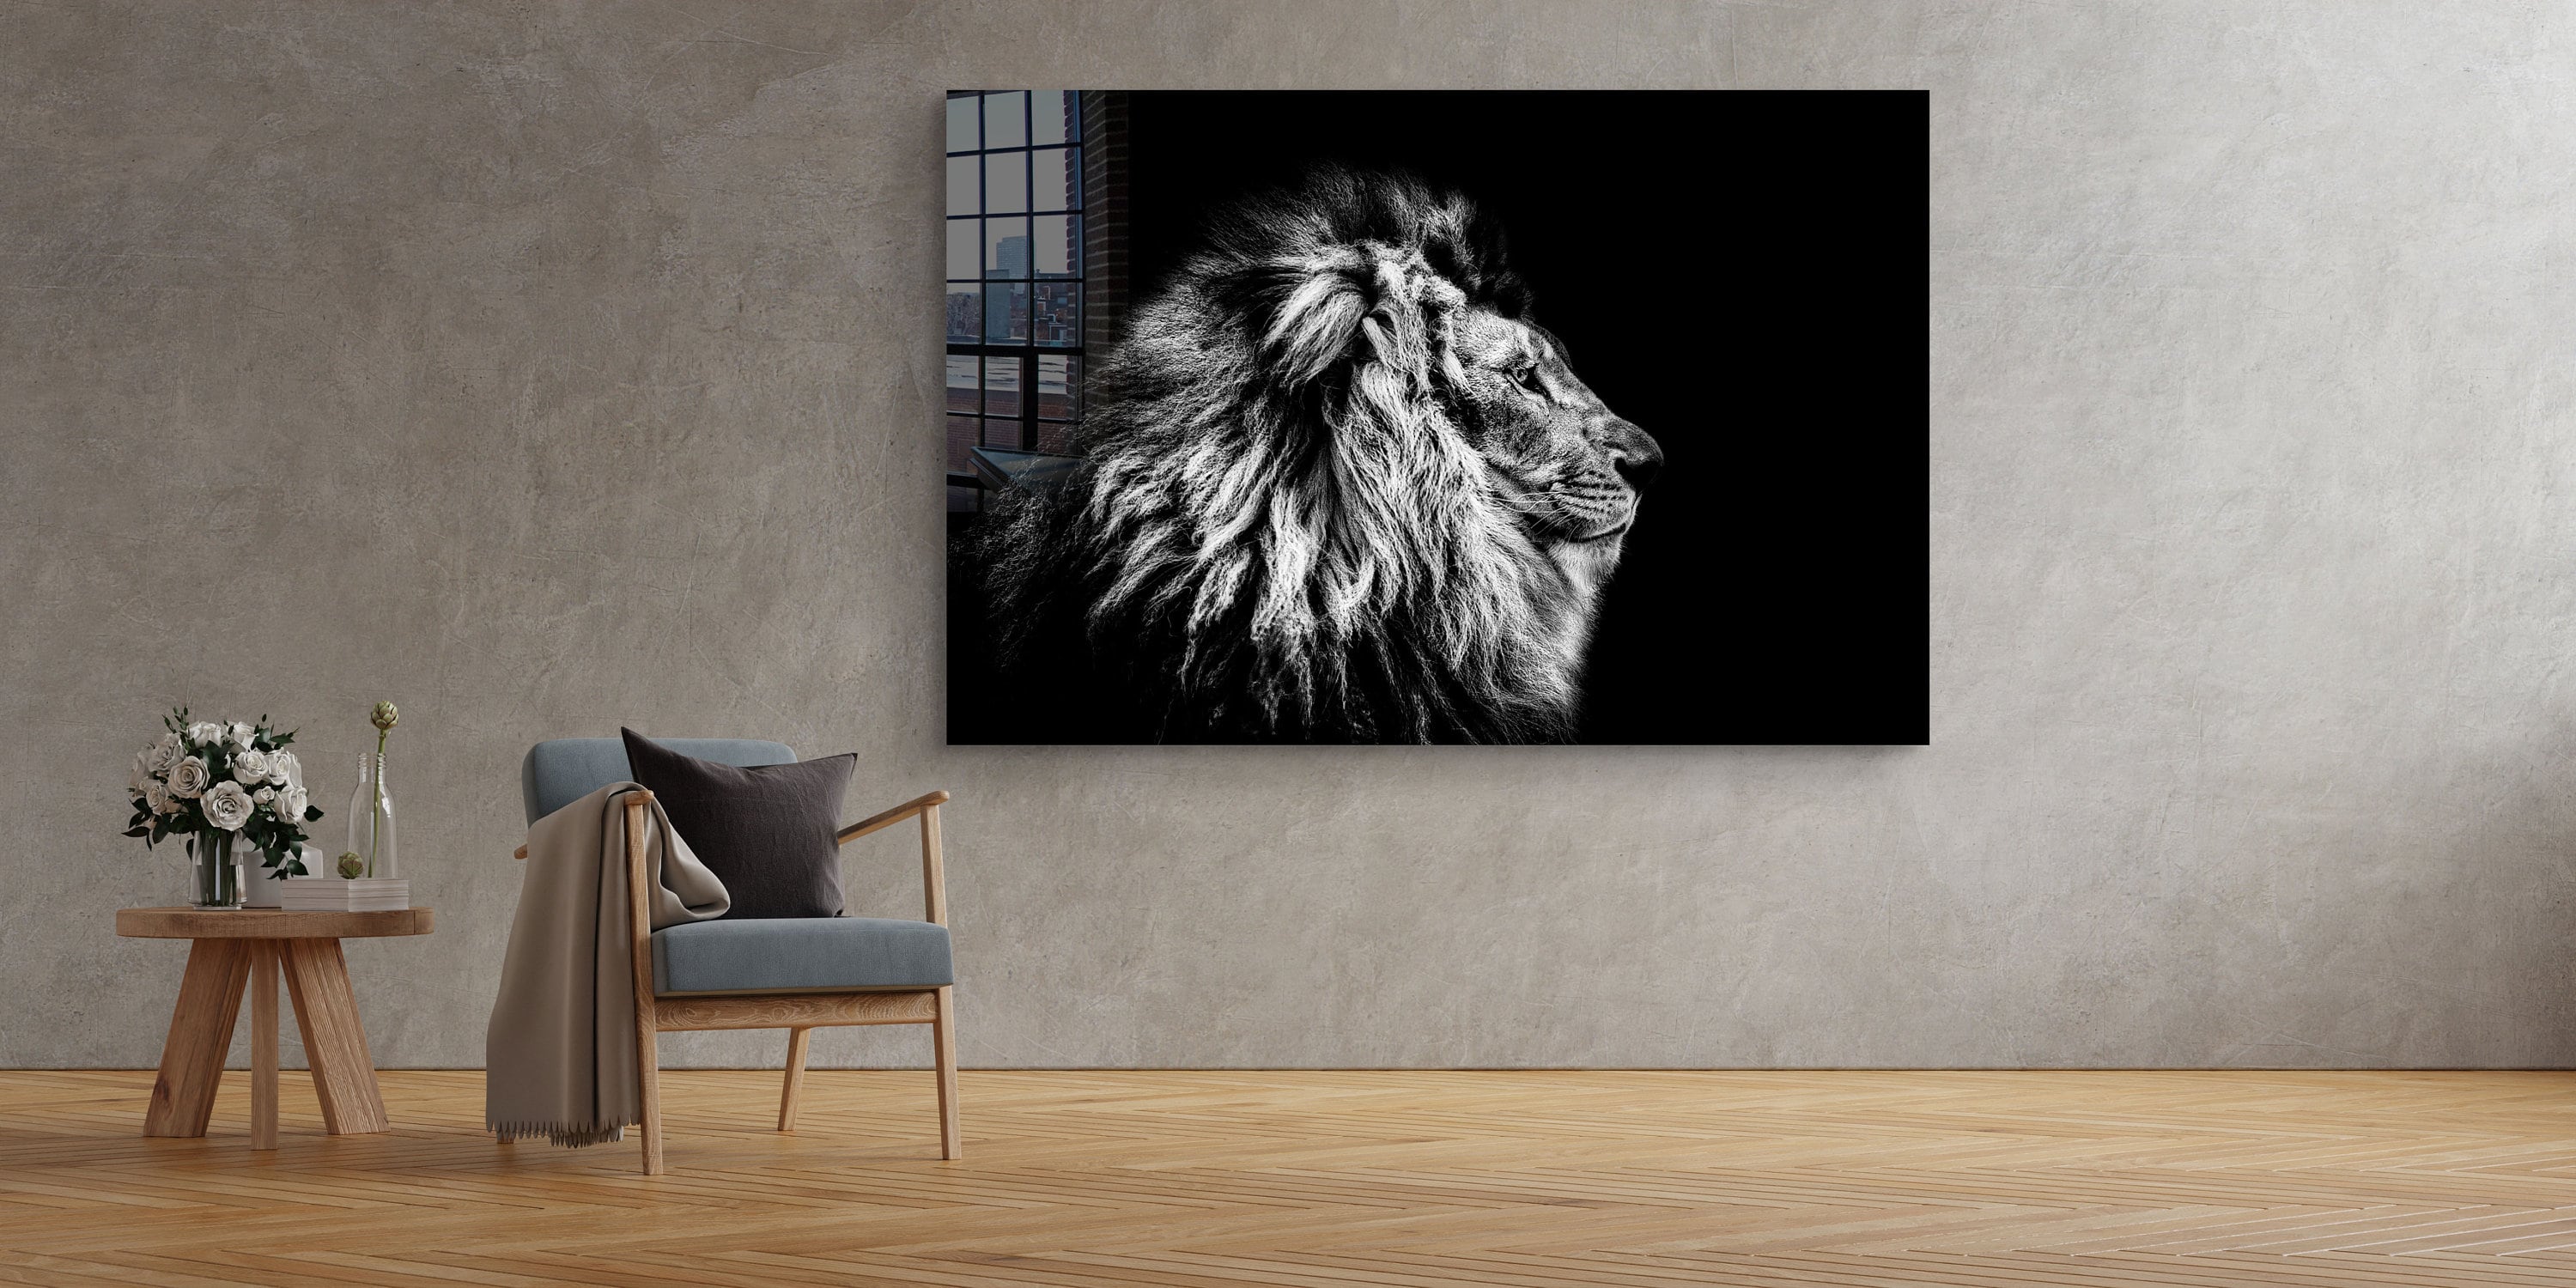 Lion Tempered Glass Printing Wall Art Natural and Vivid Wall | Etsy